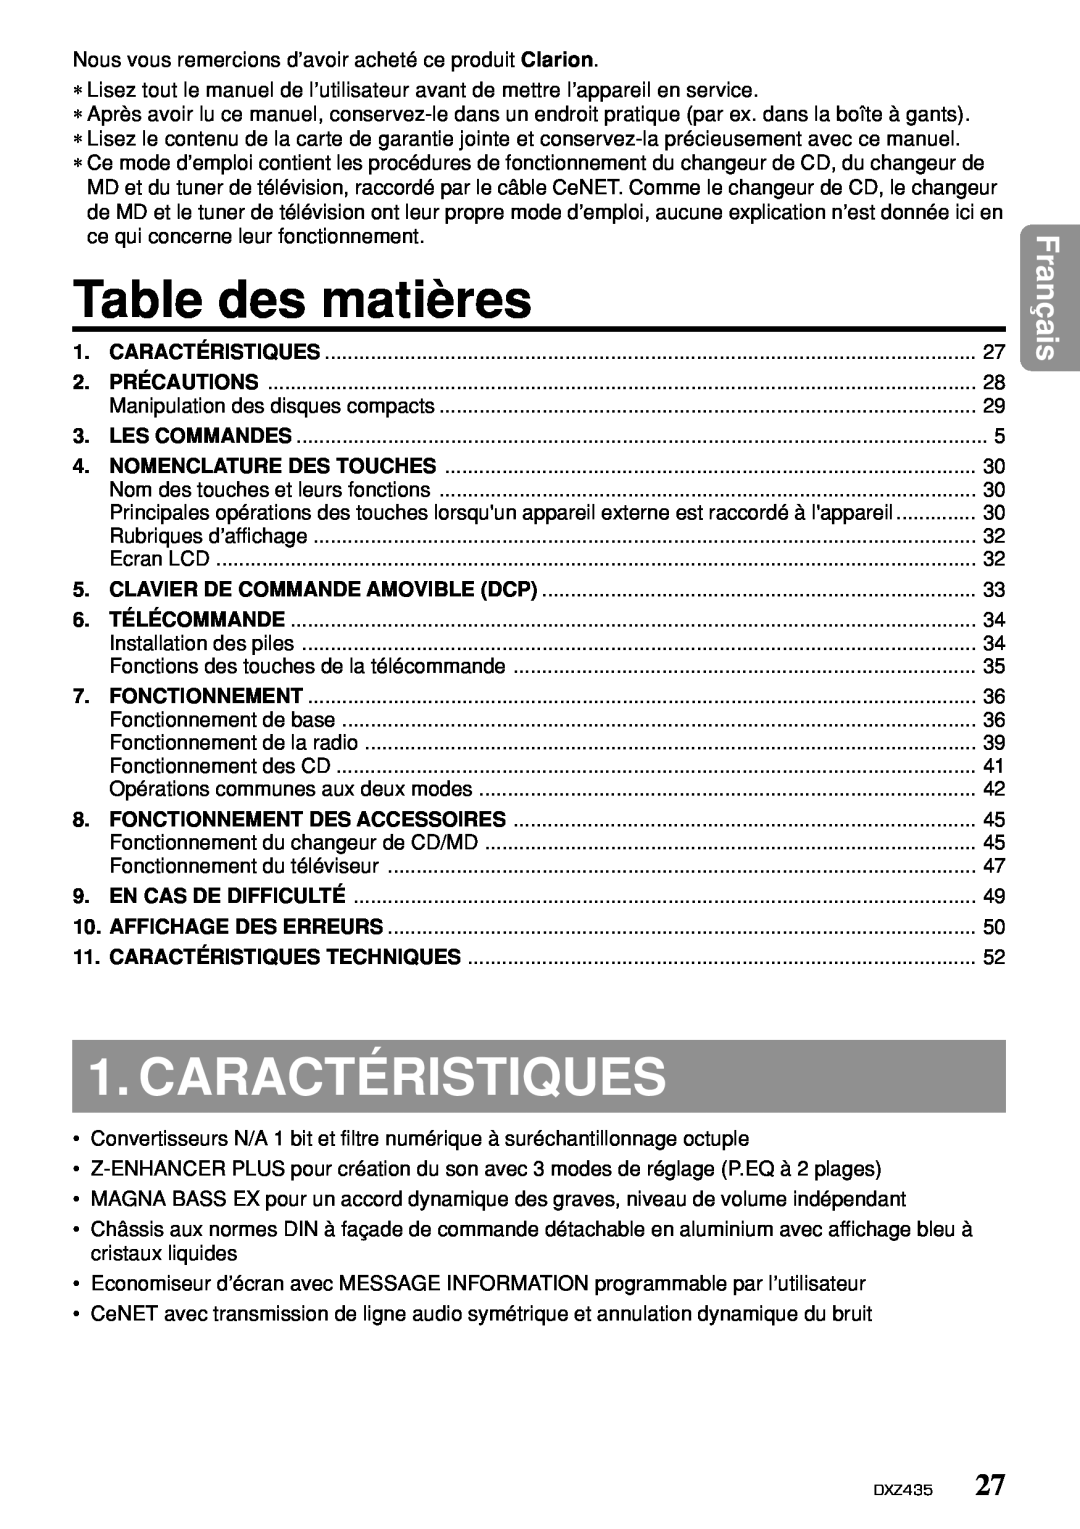 Clarion DXZ435 owner manual Table des matières, Caractéristiques, Français 